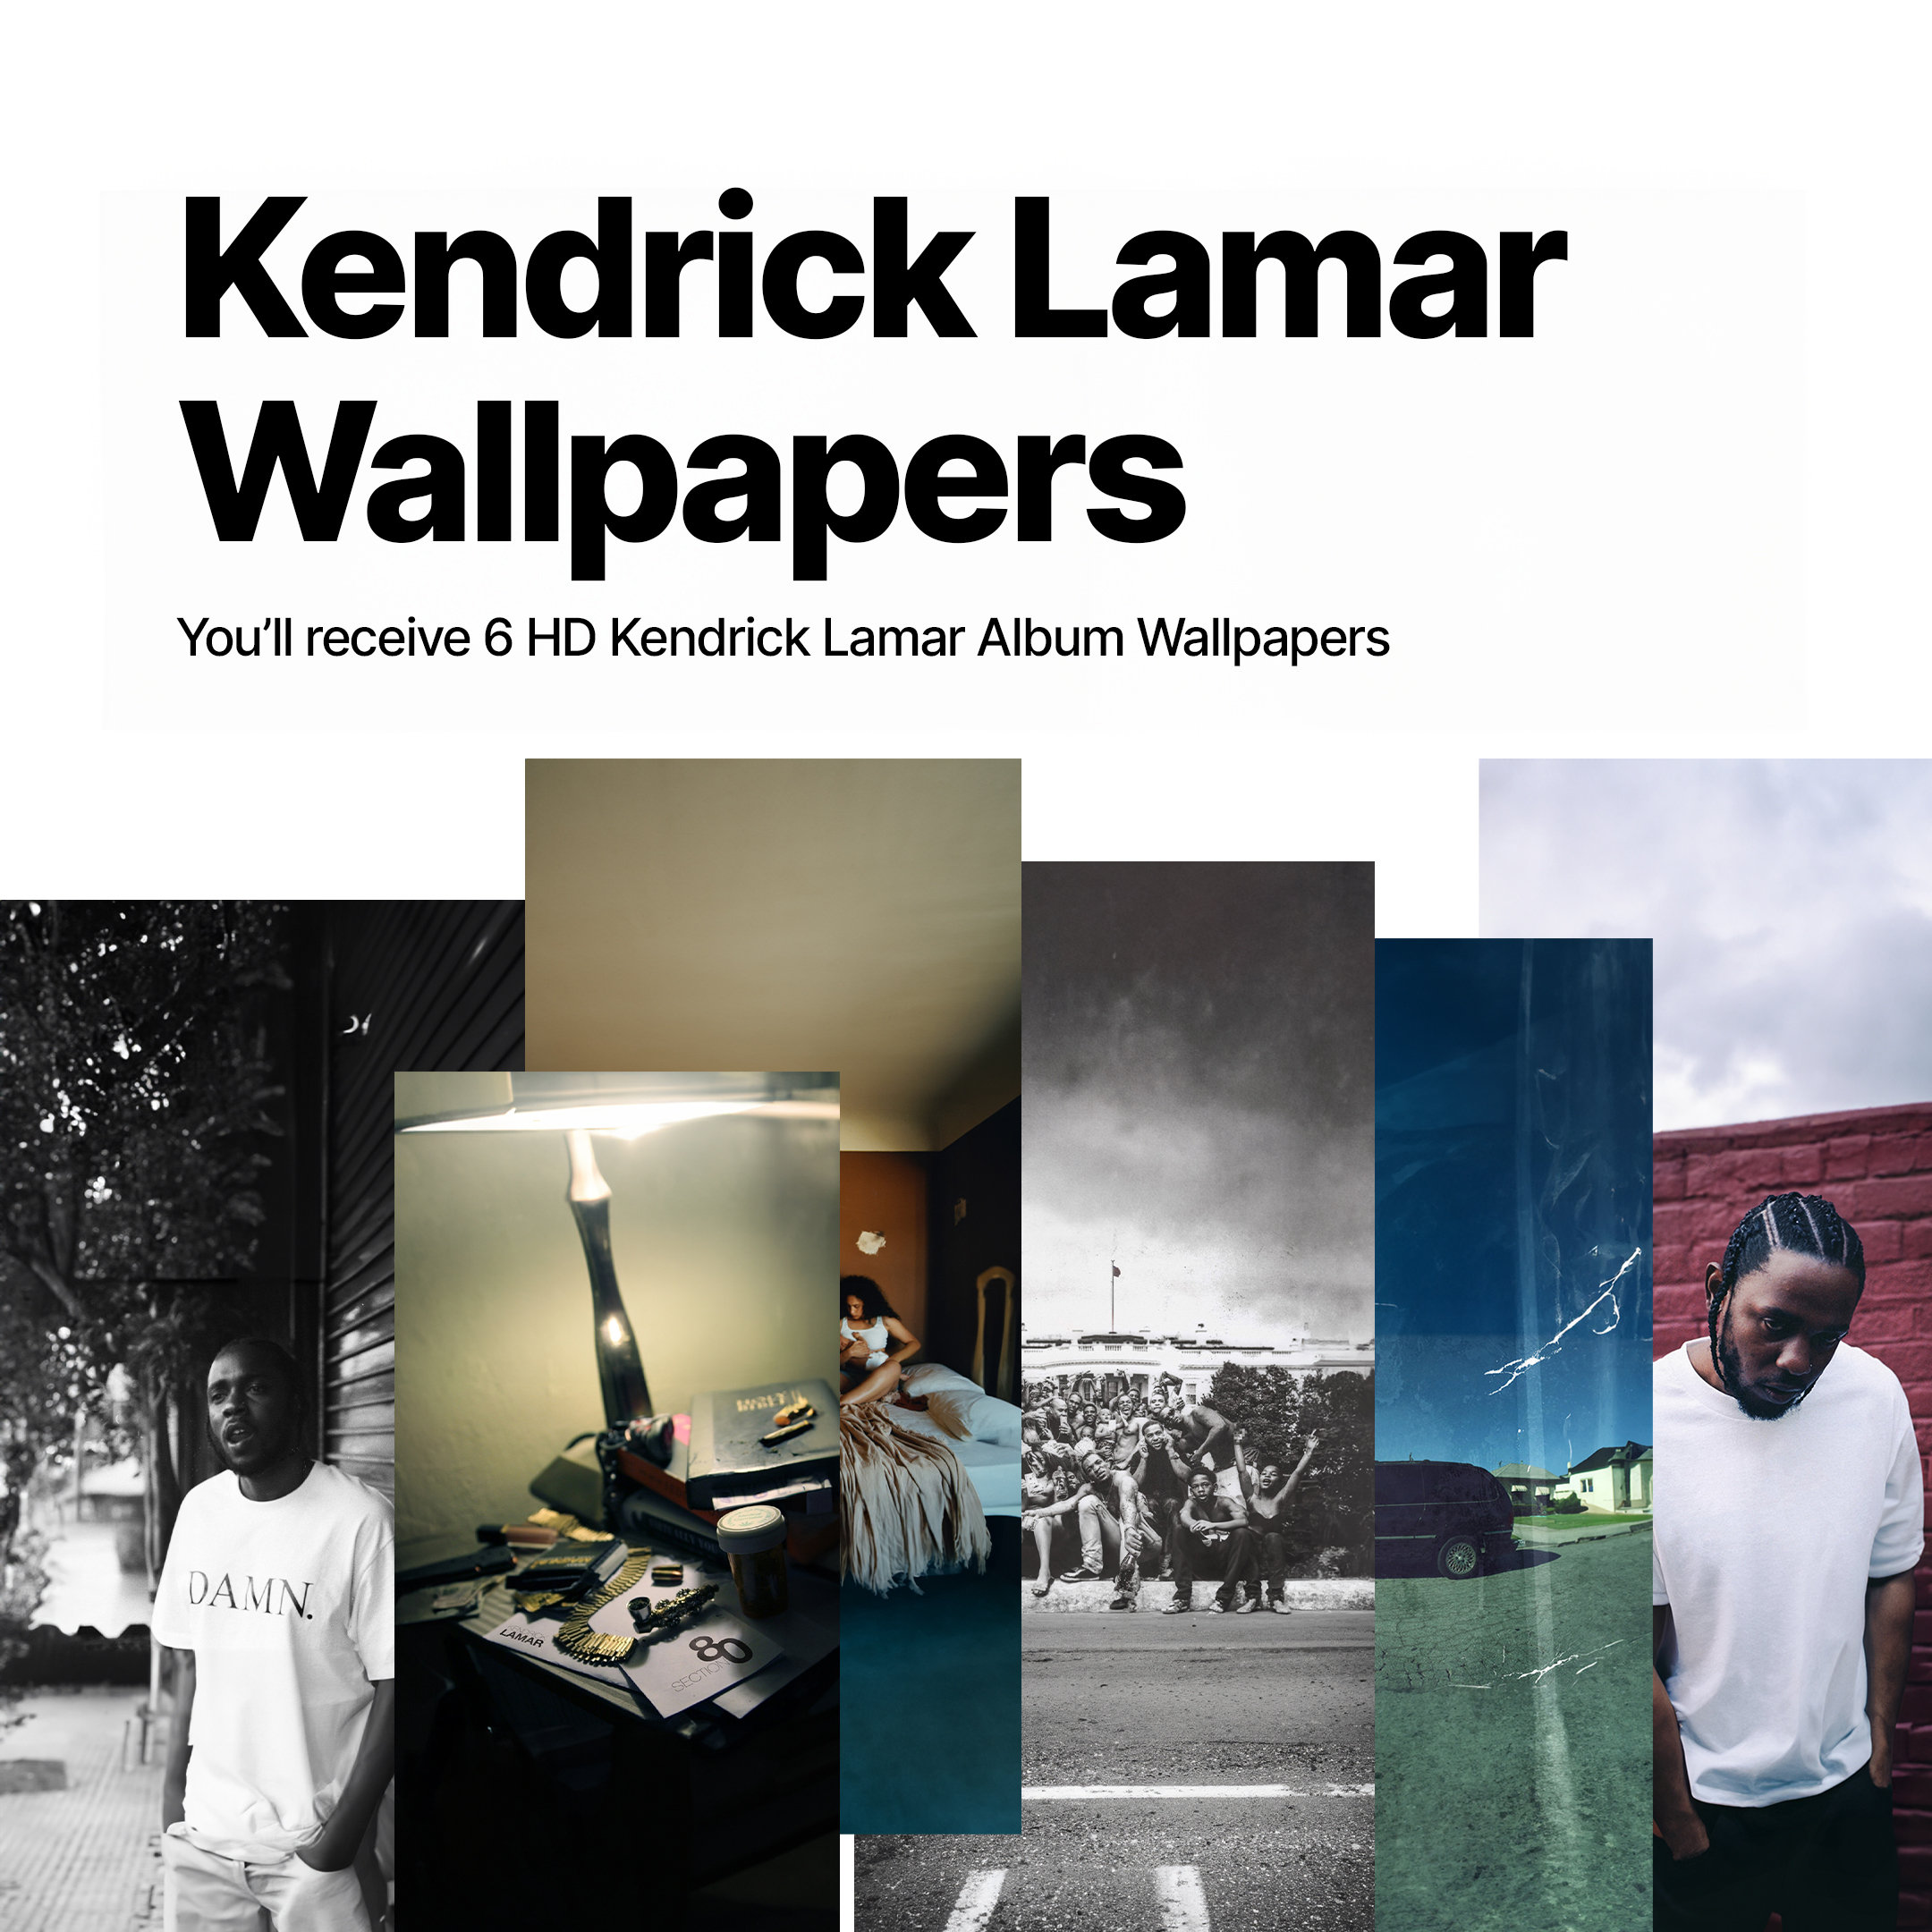 HD Kendrick Lamar Album Wallpapers IOS Digital Download Poster Music Album  Artist Rapper 